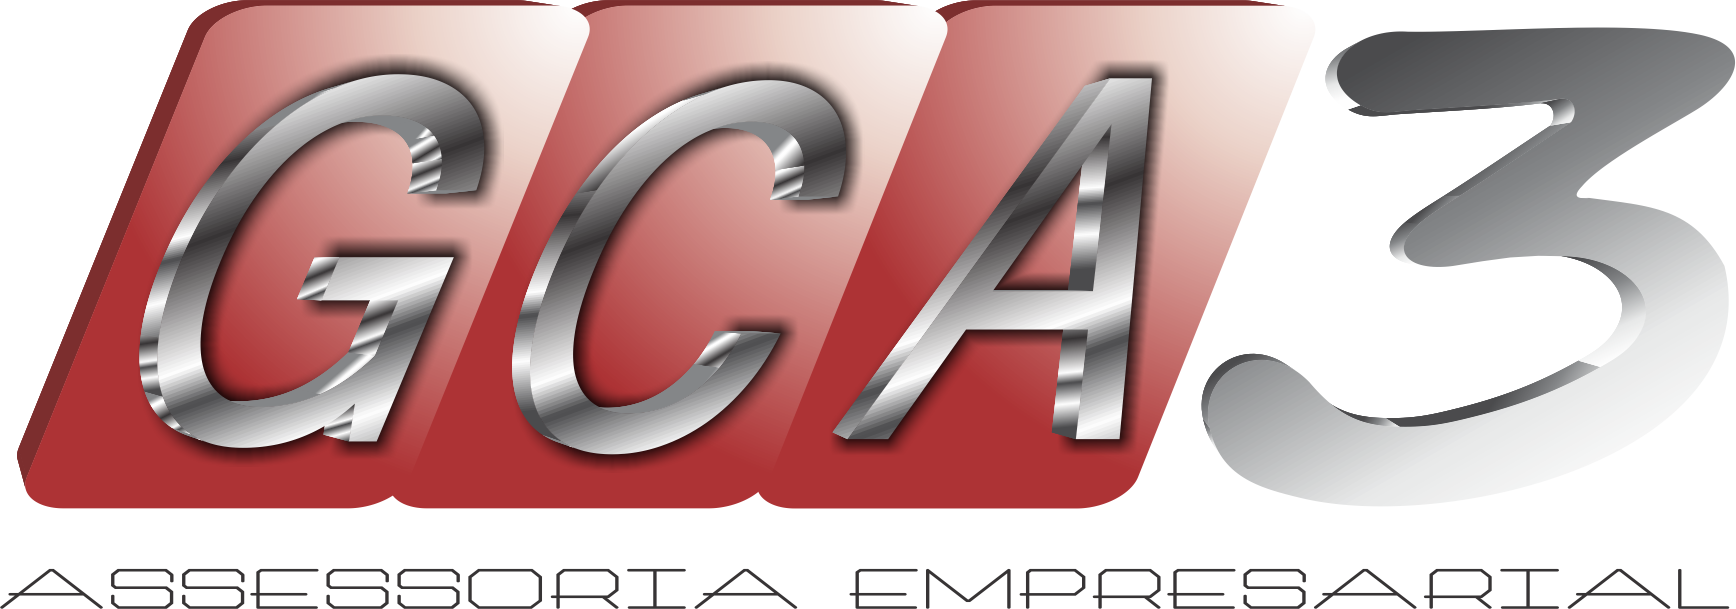 GCA3 – Assessoria Empresarial